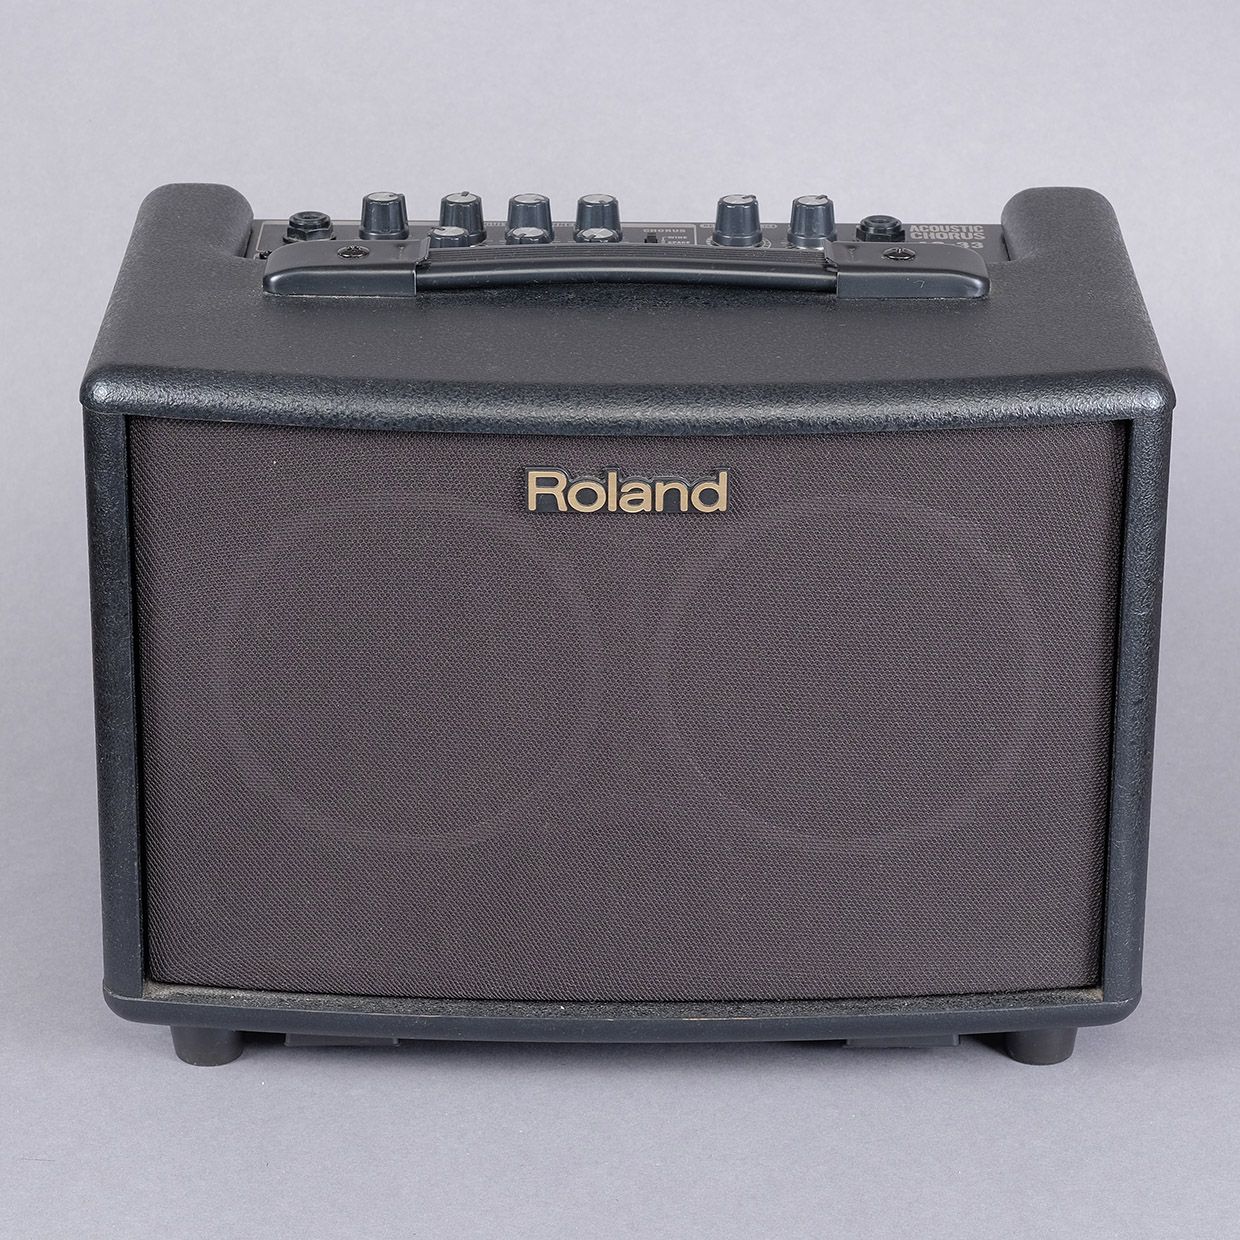 Null 放大器，"Roland"，Chorus AC 33，高23.5 x 31.5 x 21.5厘米